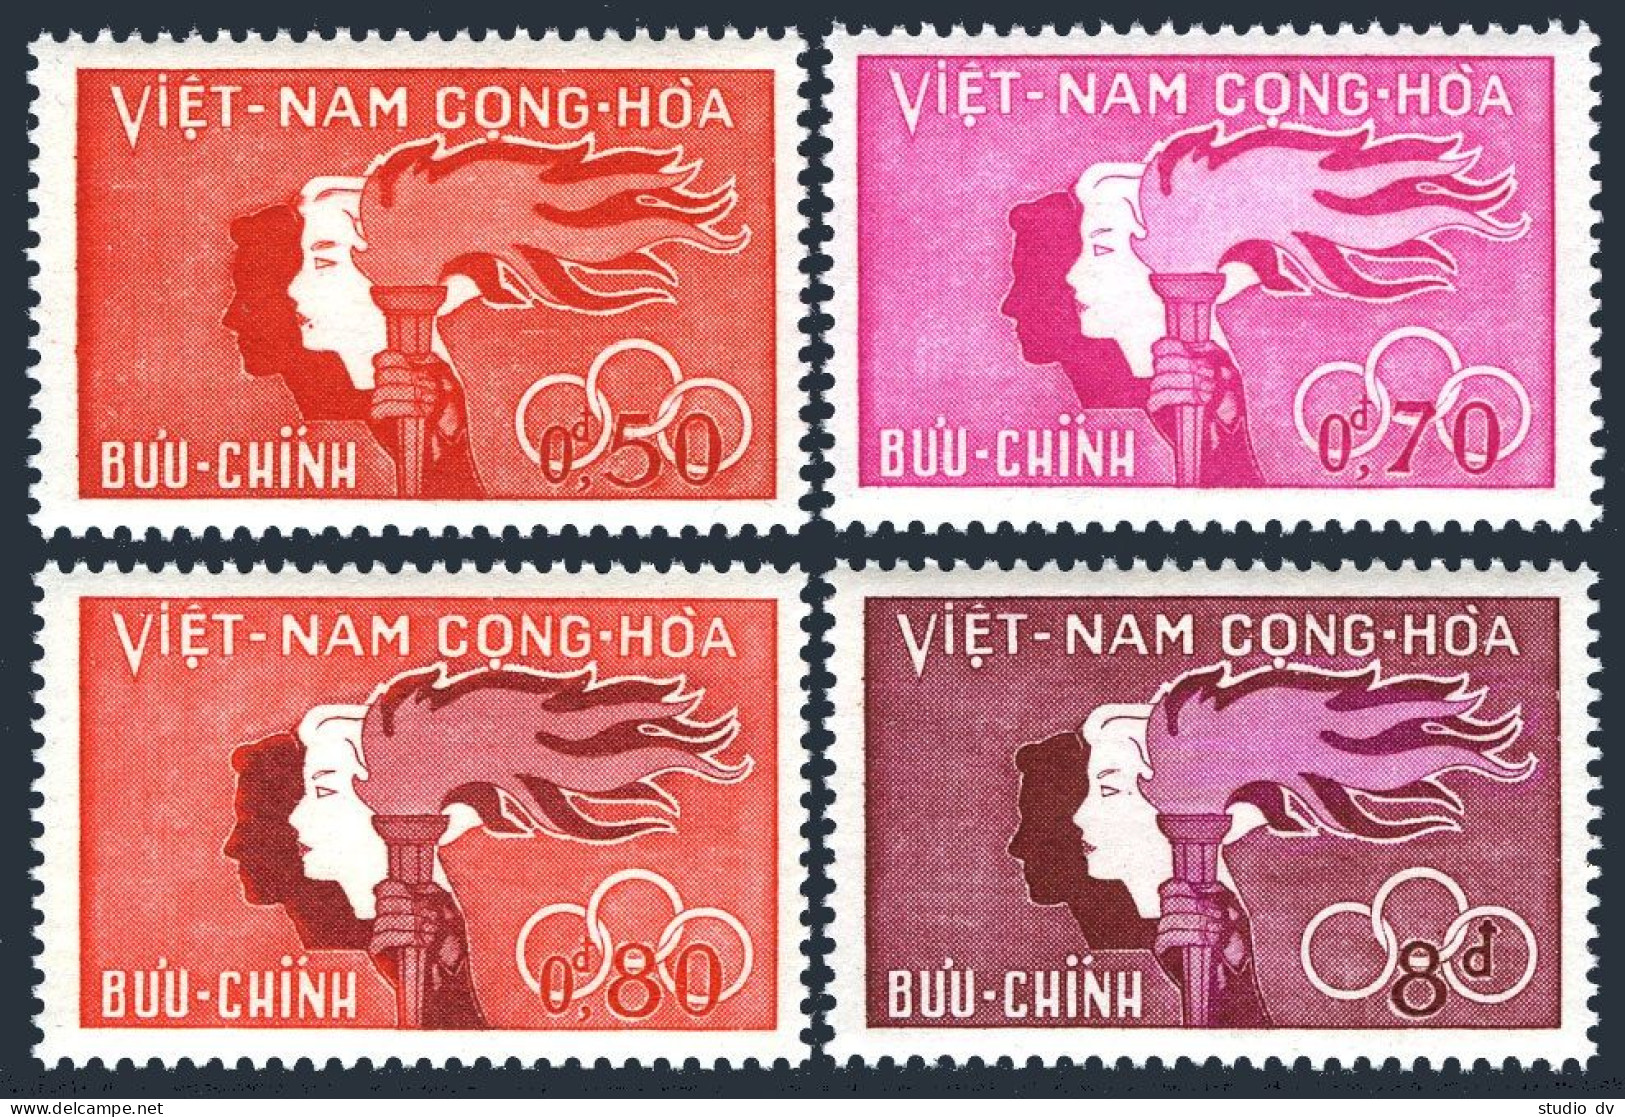 Viet Nam South 162-165, MNH. Michel 239-242. Youth Day 1961. Boy, Girl, Torch. - Viêt-Nam